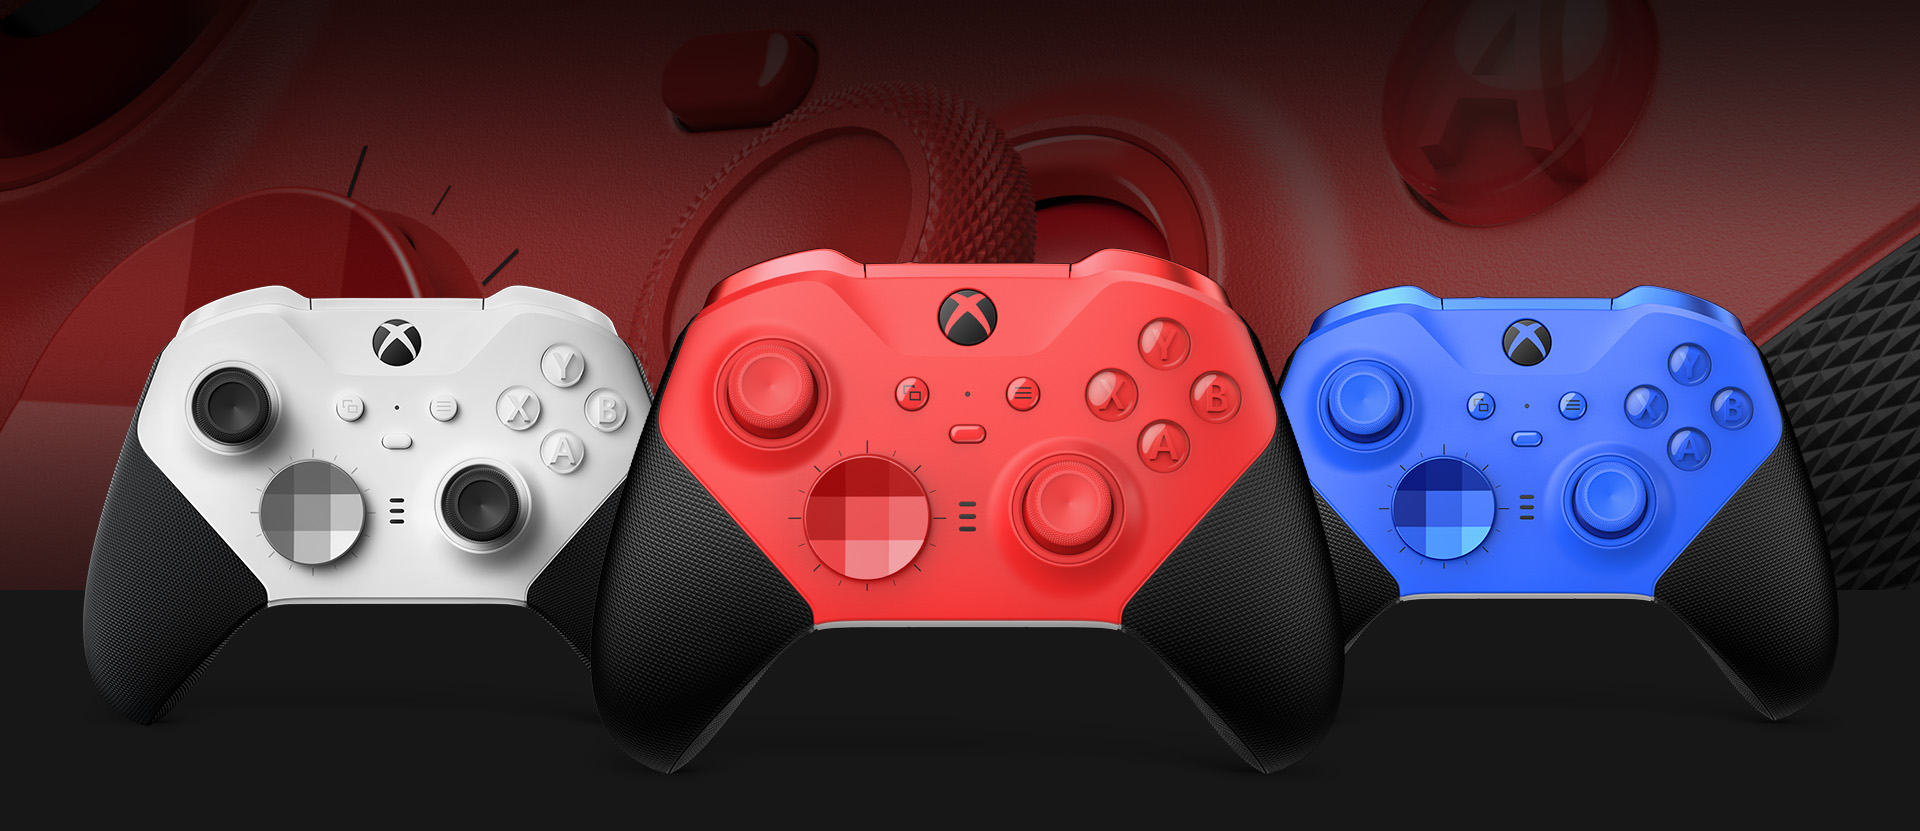 Xbox Elite Wireless Controller Series 2 – Core (Rot) mit anderen Farboptionen daneben von vorn. Nahaufnahme der Controller-Ministicks und des strukturierten Griffs im Hintergrund.